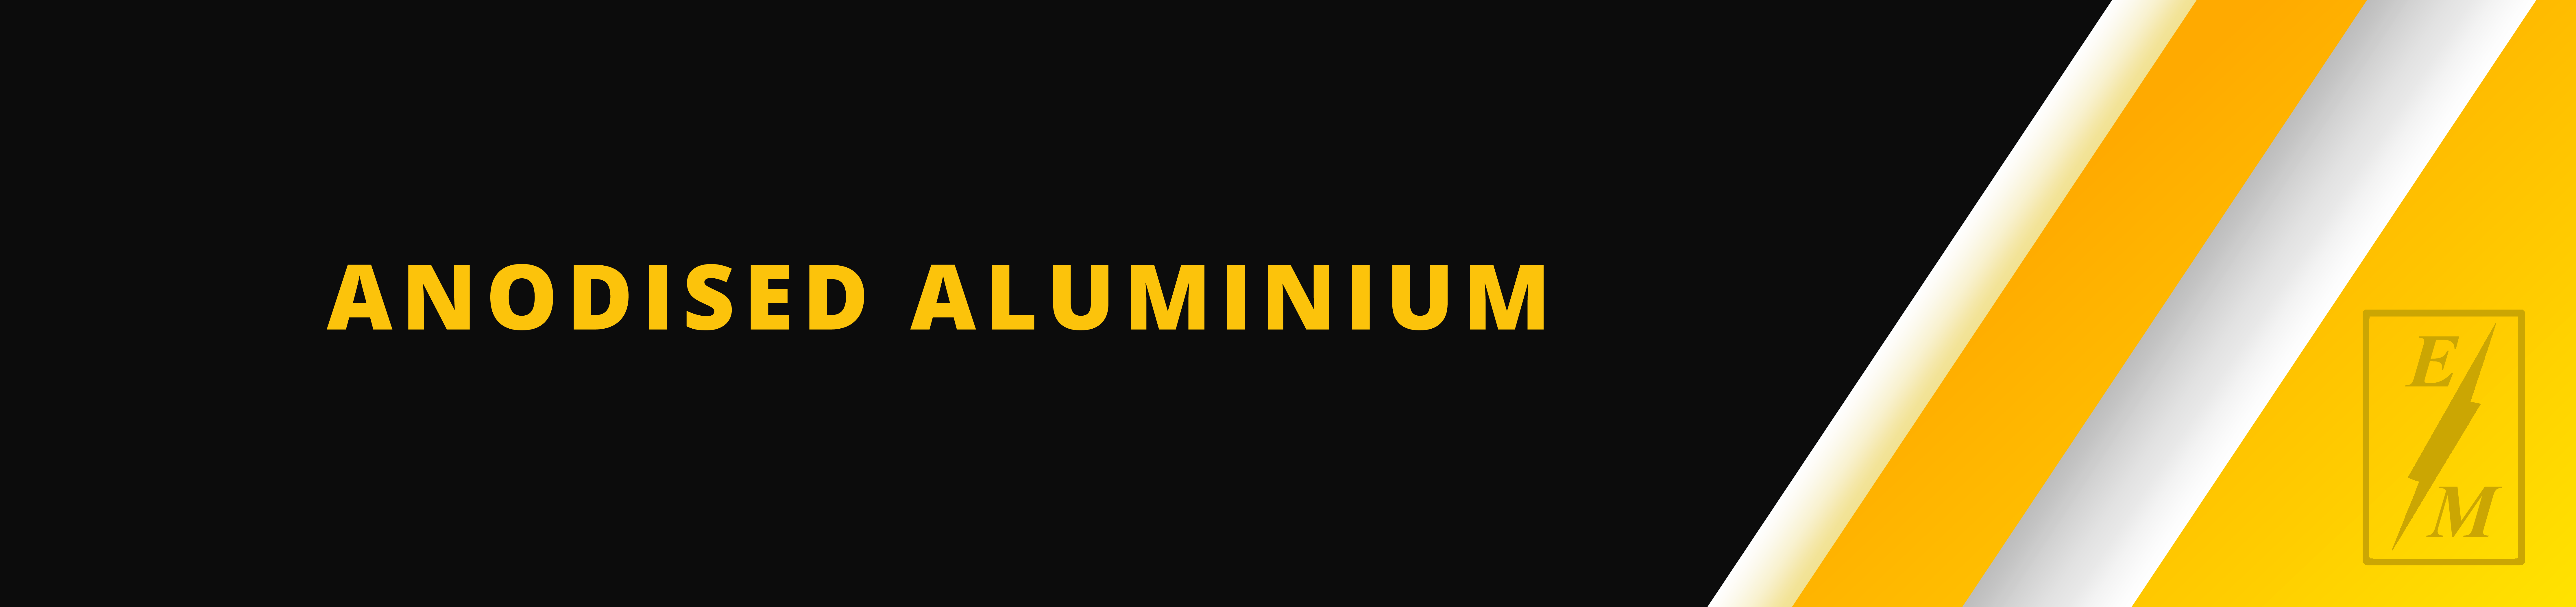 Anodised_aluminium